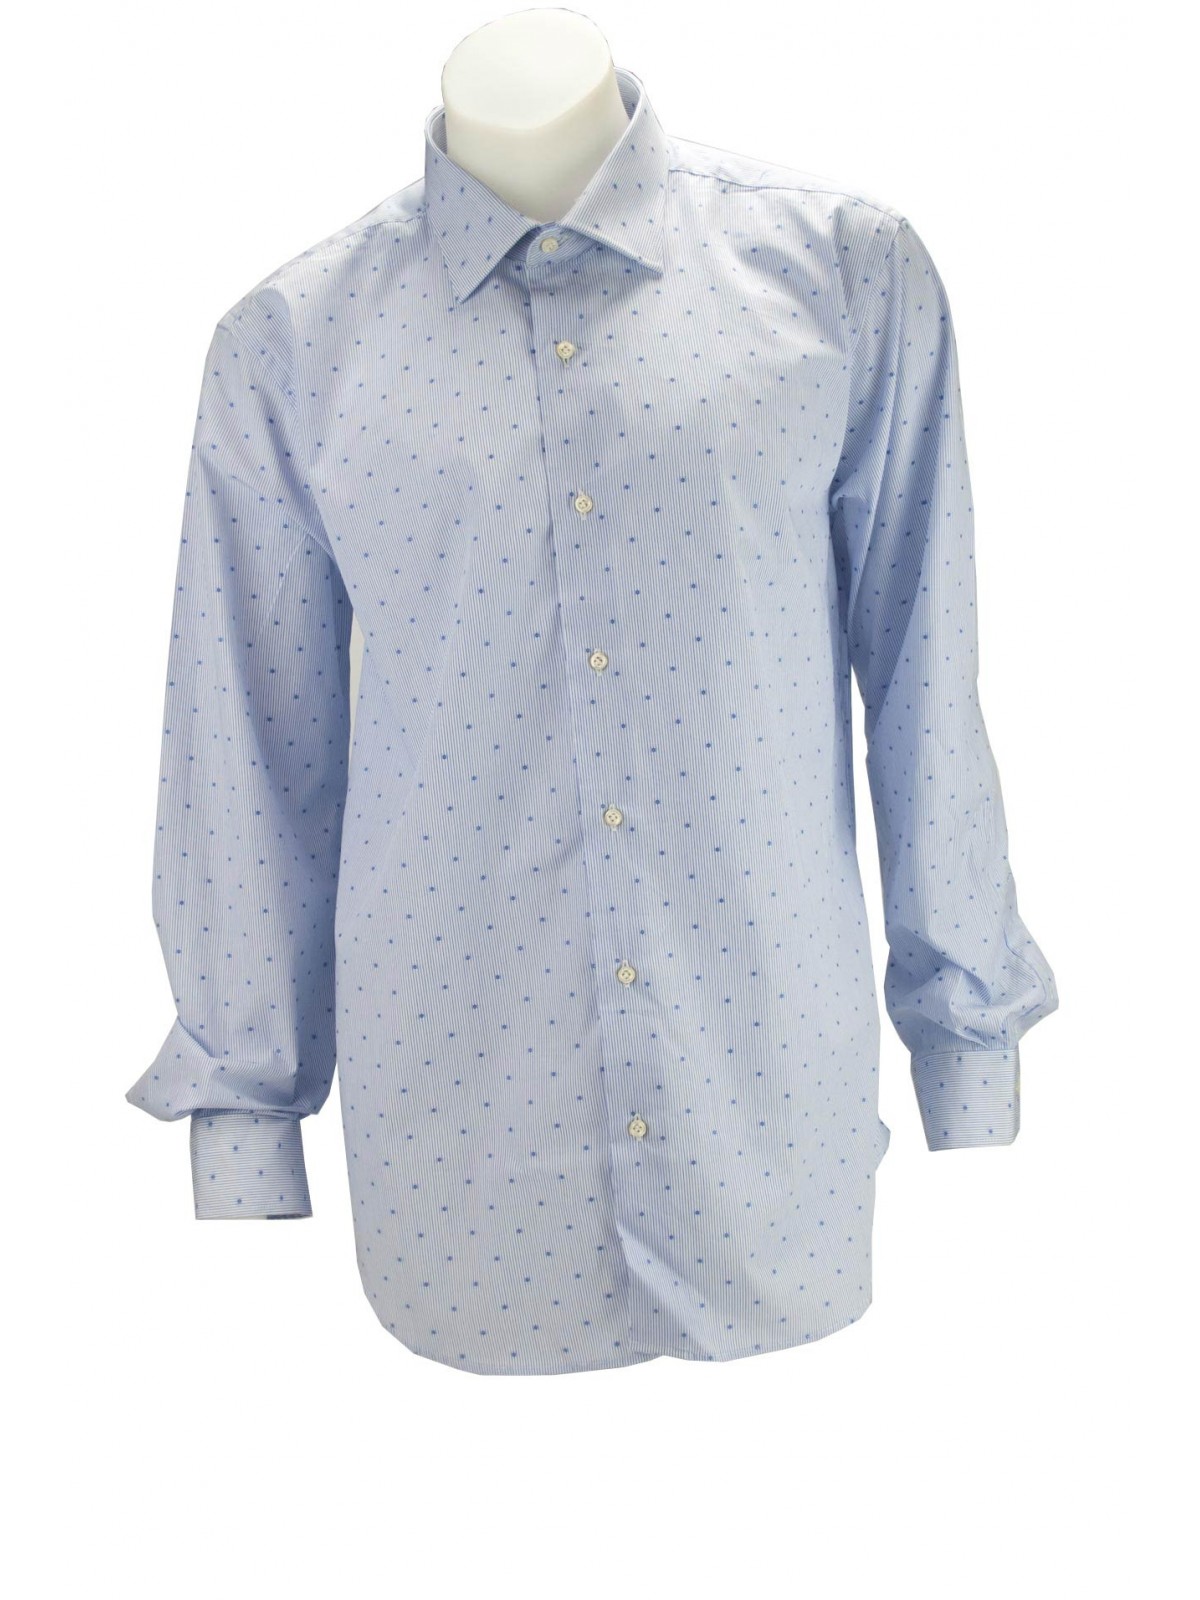 Hellblaues Herrenhemd mit Streifen und Tupfen aus Popeline ohne Tasche - Philo Vance - Bordeaux